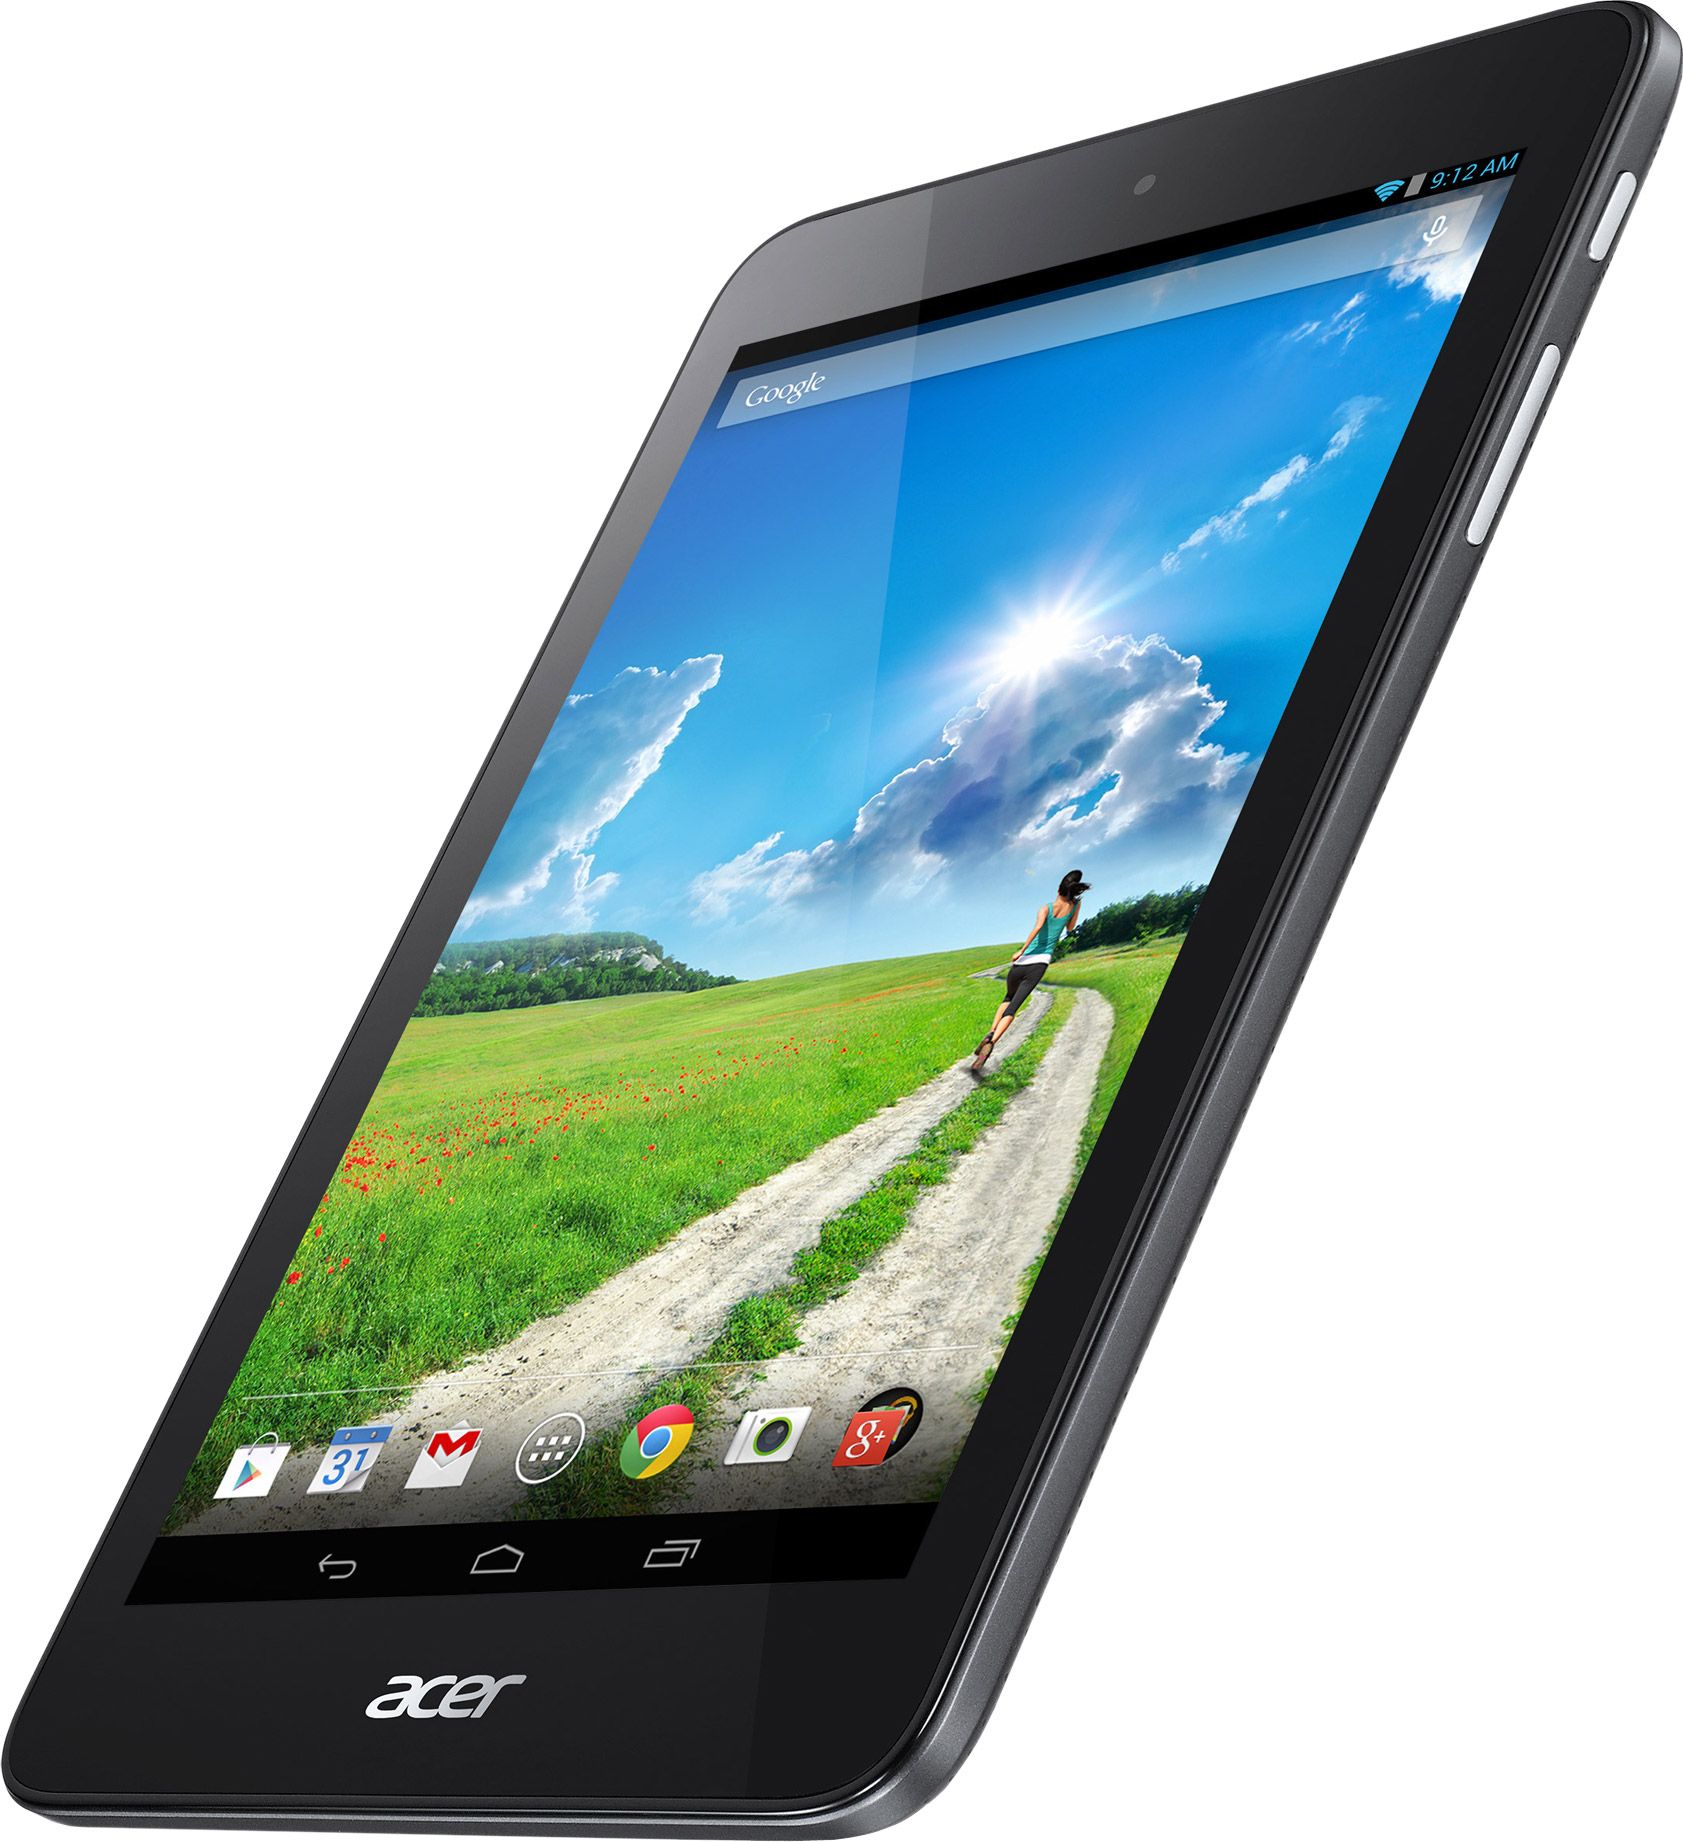 Купить планшет acer. Acer Iconia b1-750. Планшет Acer Iconia one b1-750. Планшет Асер 7 дюймов. Планшет Acer 2010 года.